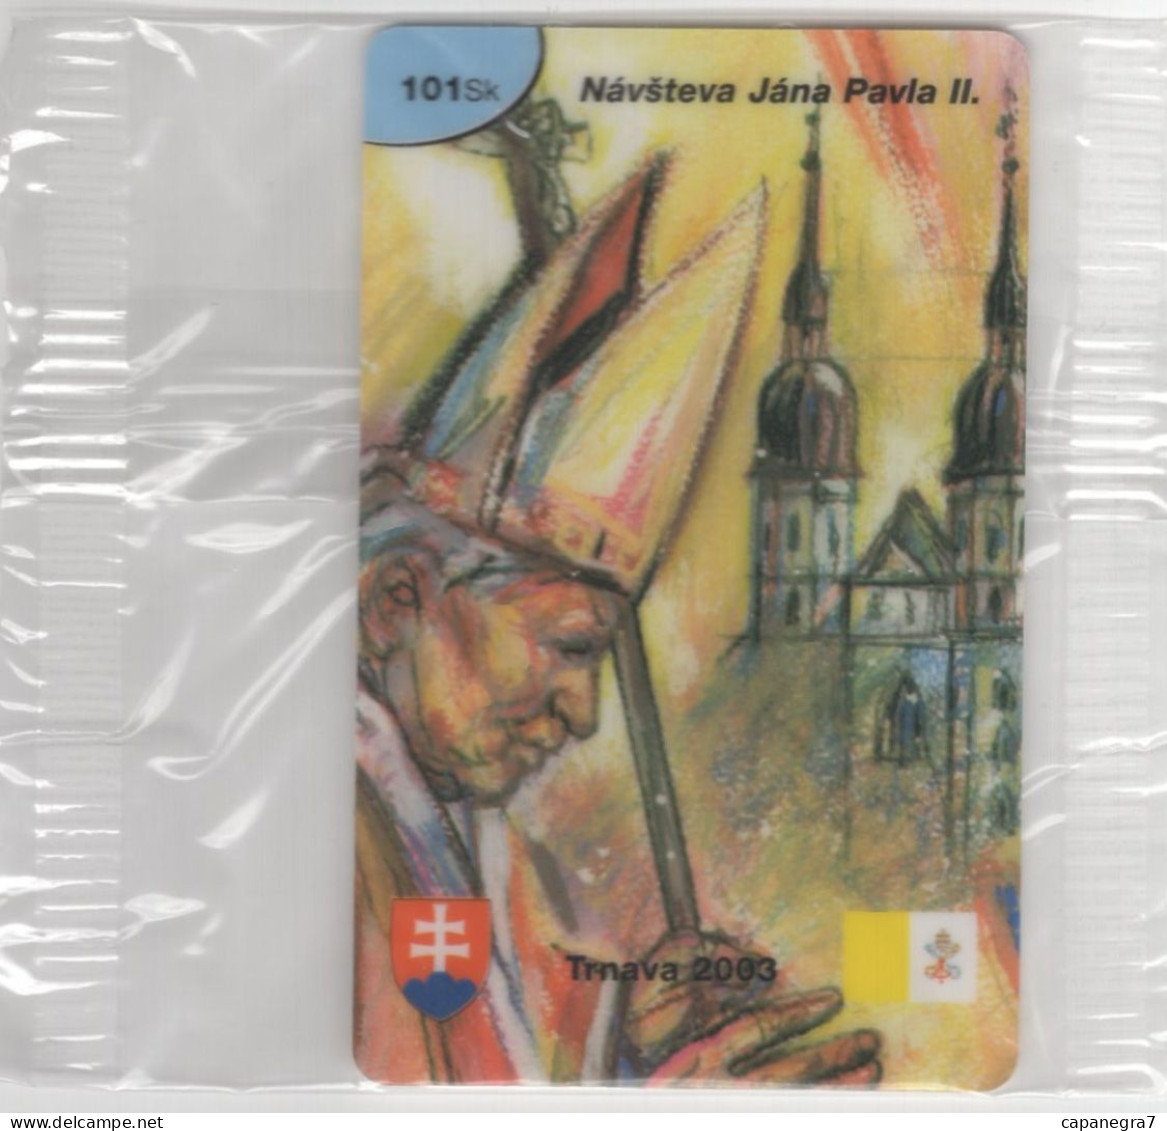 Pope John Paulu II. - Trnava 2003, Prepaid Calling Card, 101 Sk., 1.250 Pc., GlobalIPhone, Slovakia, Mint, Packed - Slowakei